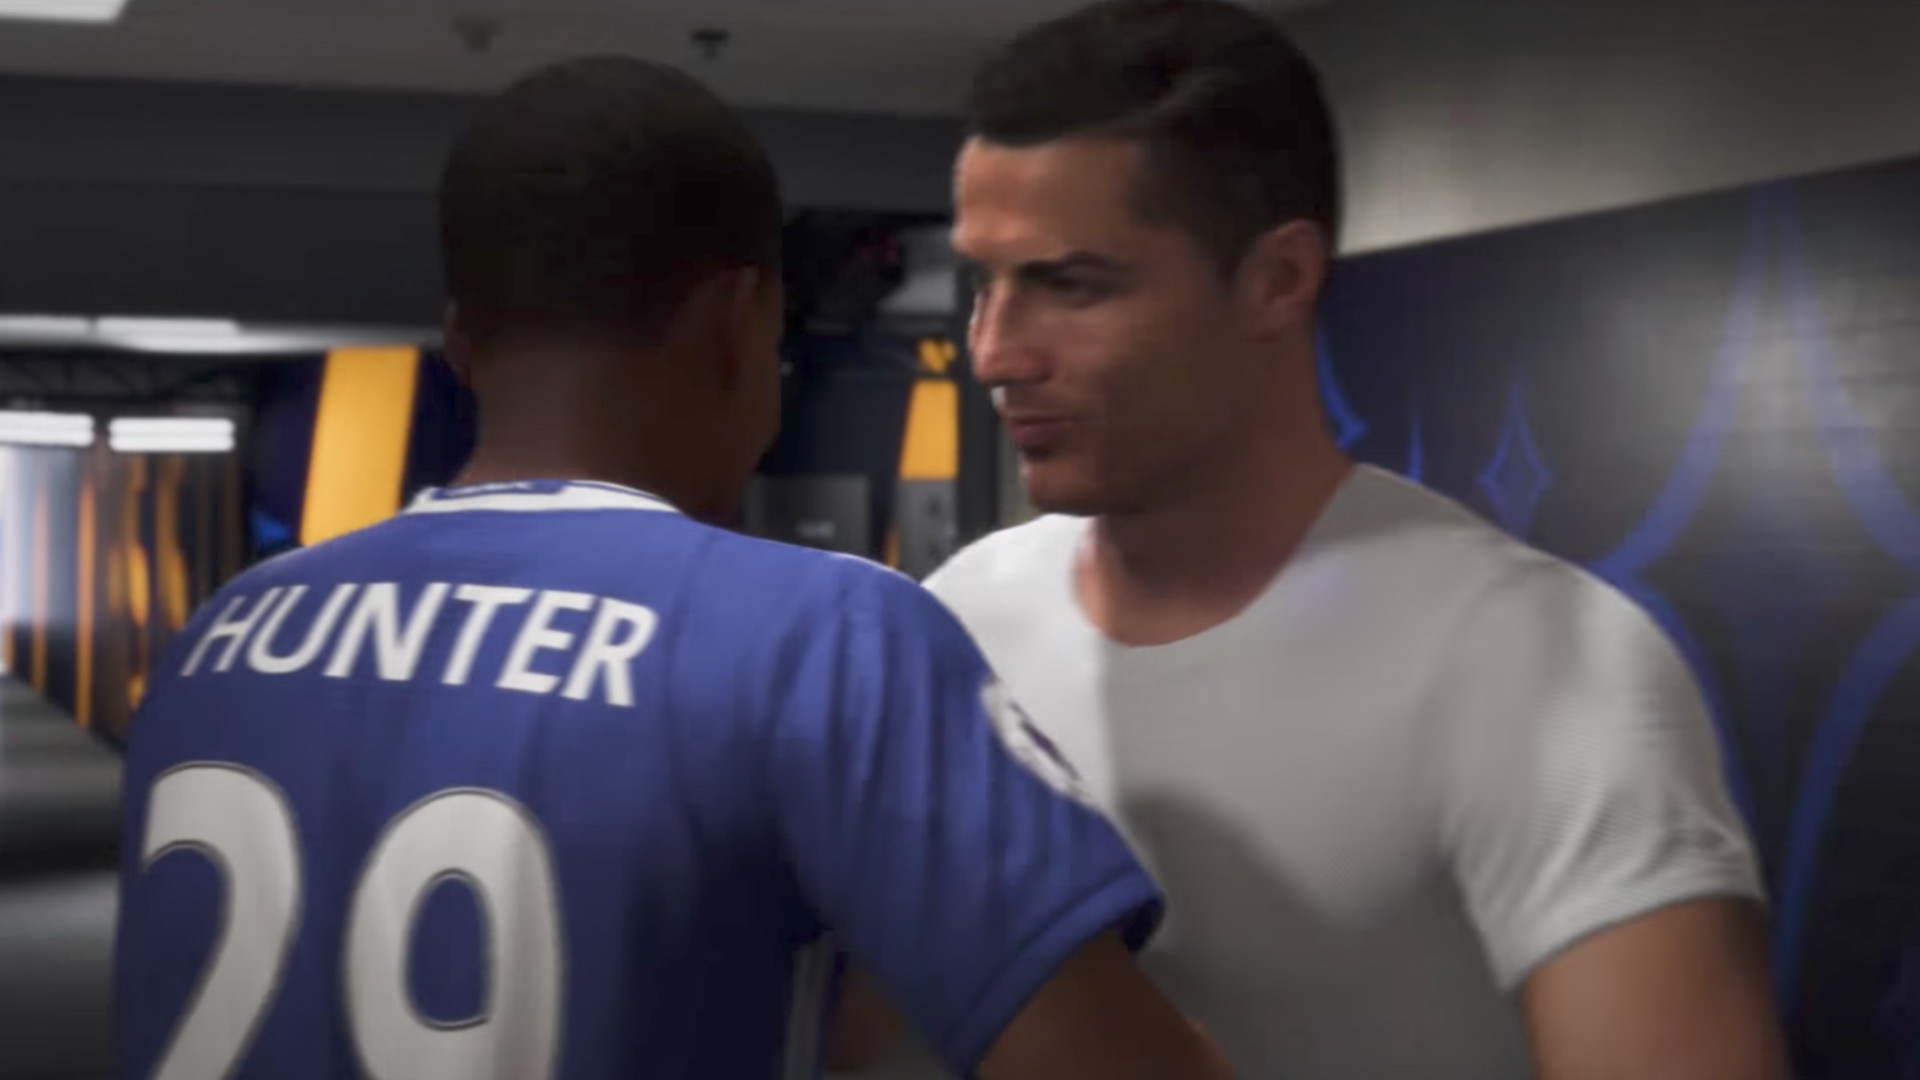 Alex Hunter and Cristiano Ronaldo in FIFA 18